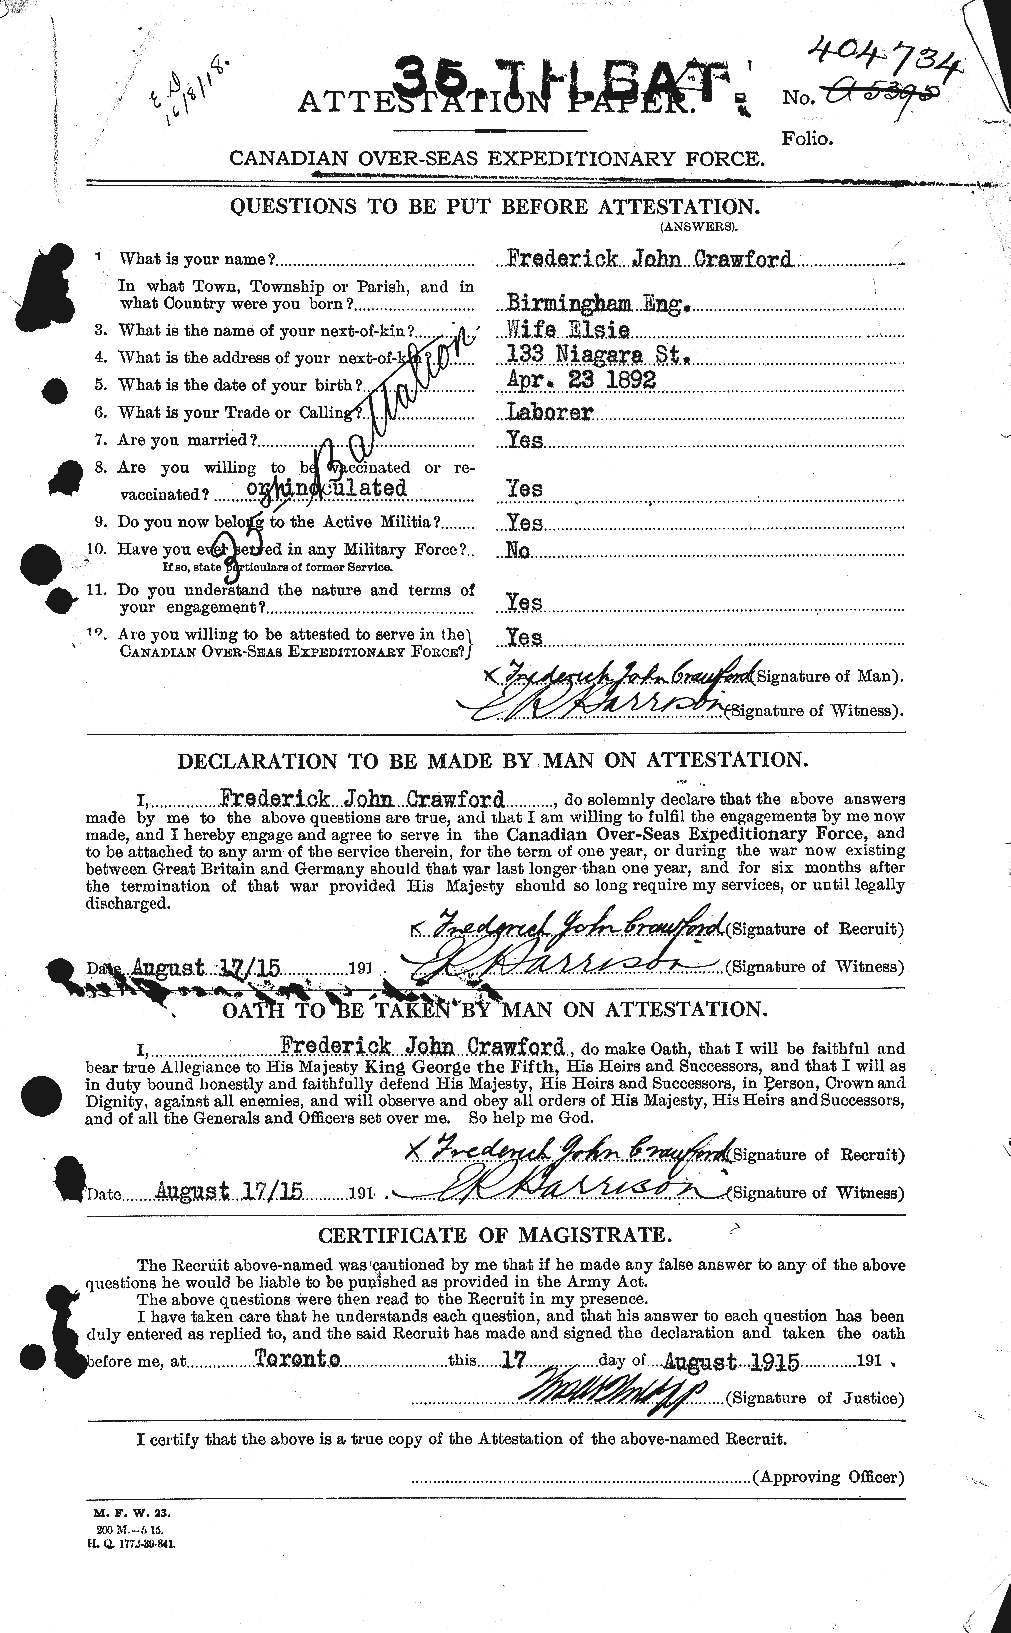 Dossiers du Personnel de la Première Guerre mondiale - CEC 060723a